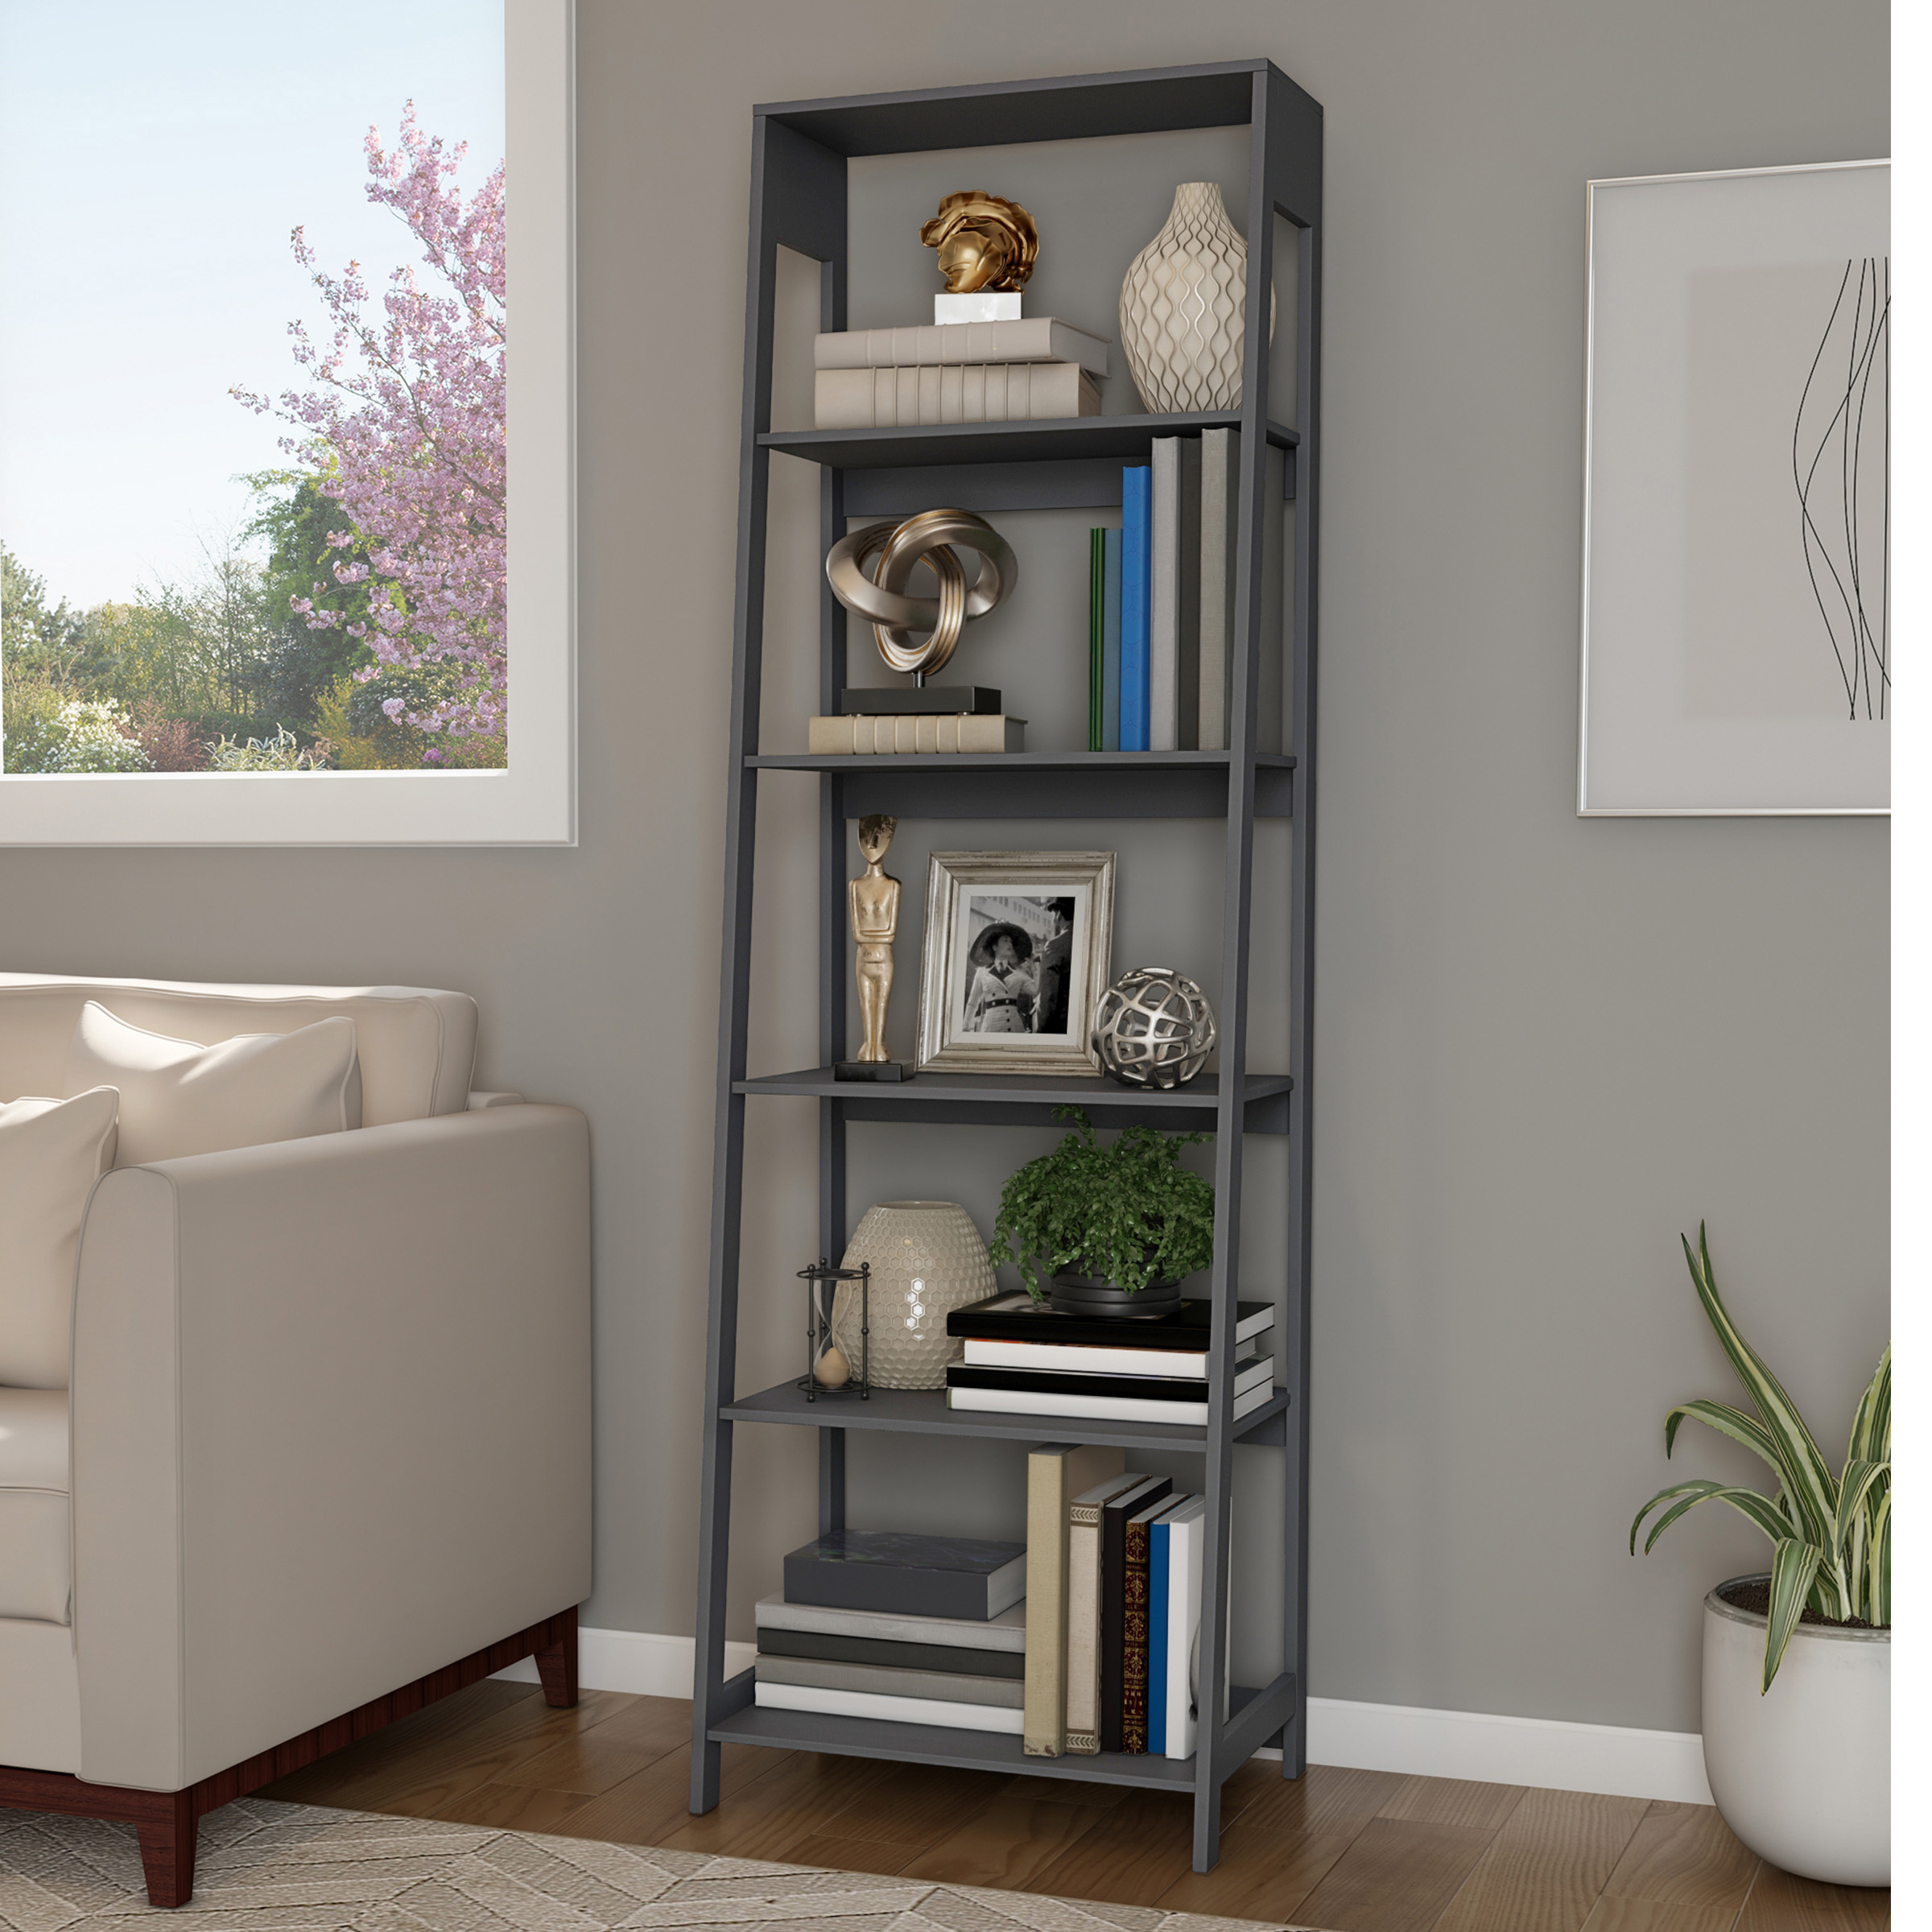 5-Tier Ladder Bookshelf - Freestanding Wooden Bookcase Decorative Shelves - White